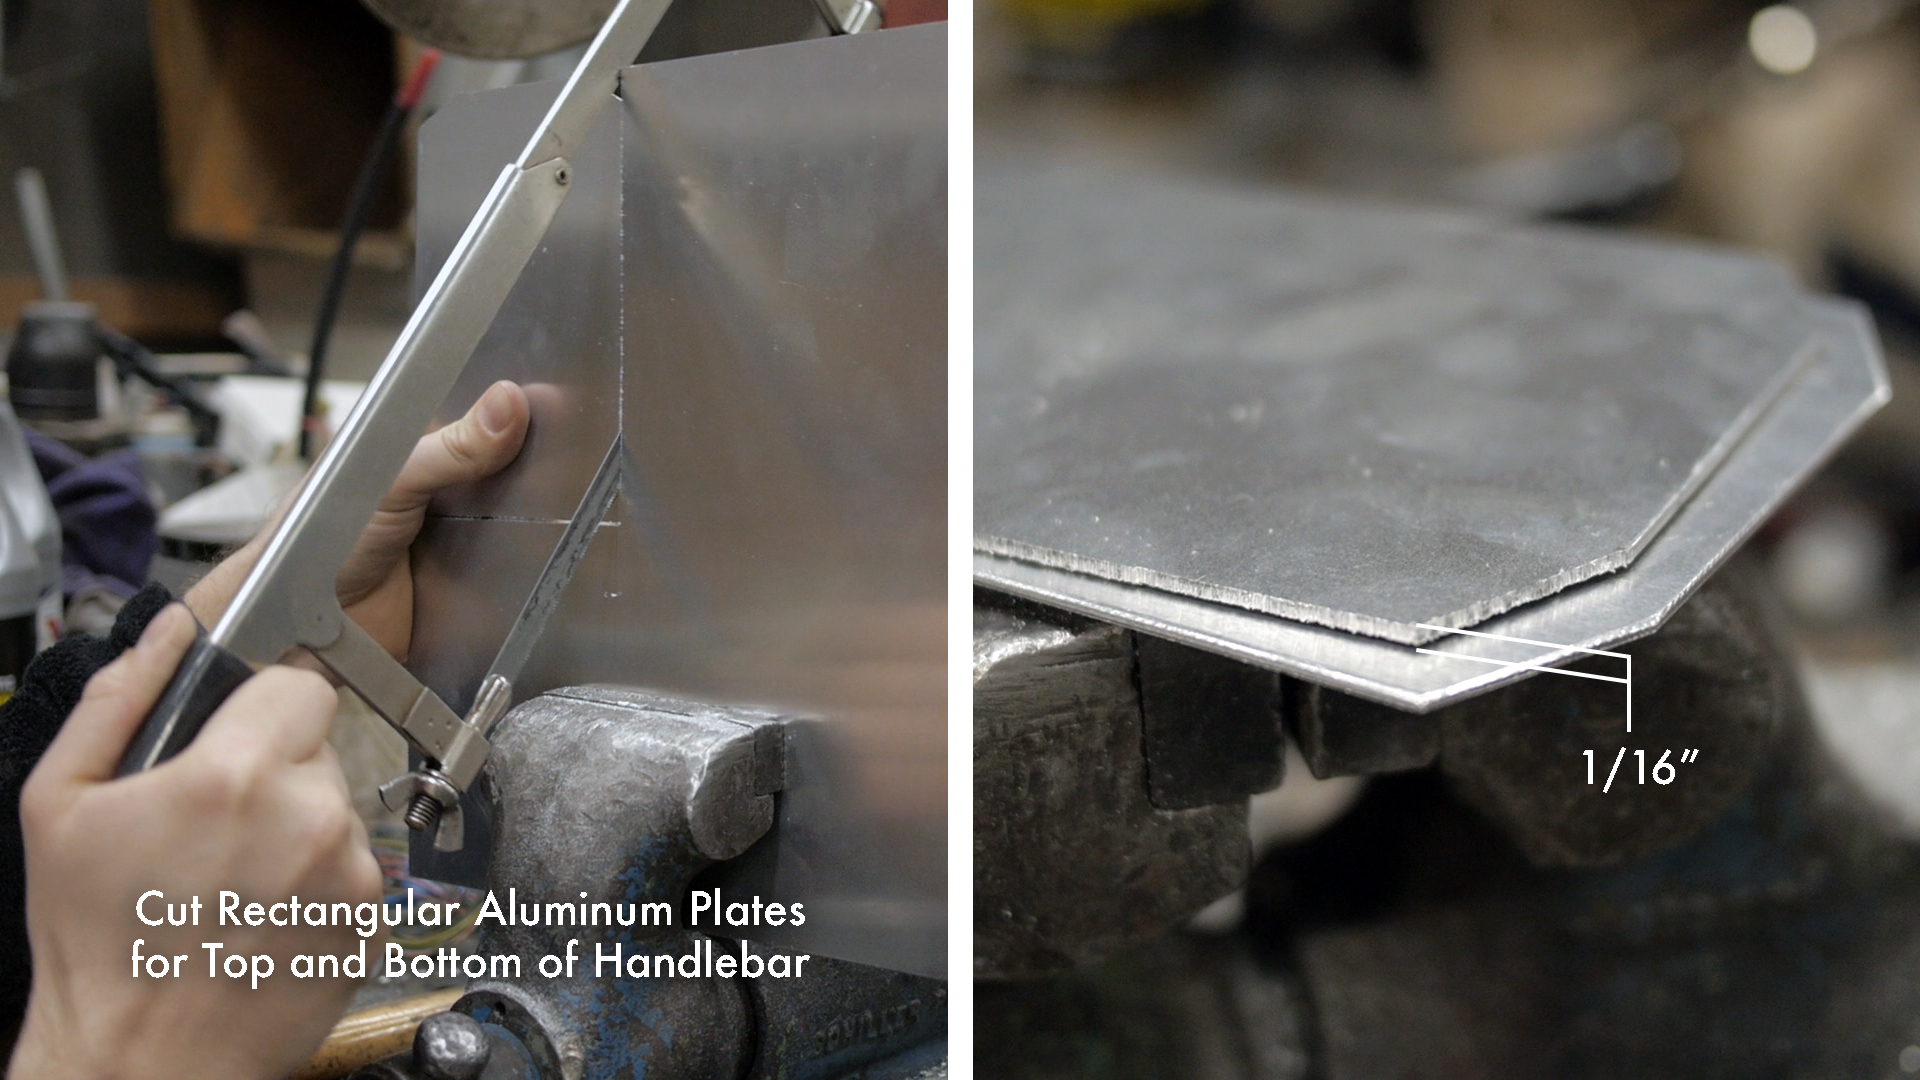 Cut Aluminum Plates for Handlebar.jpg